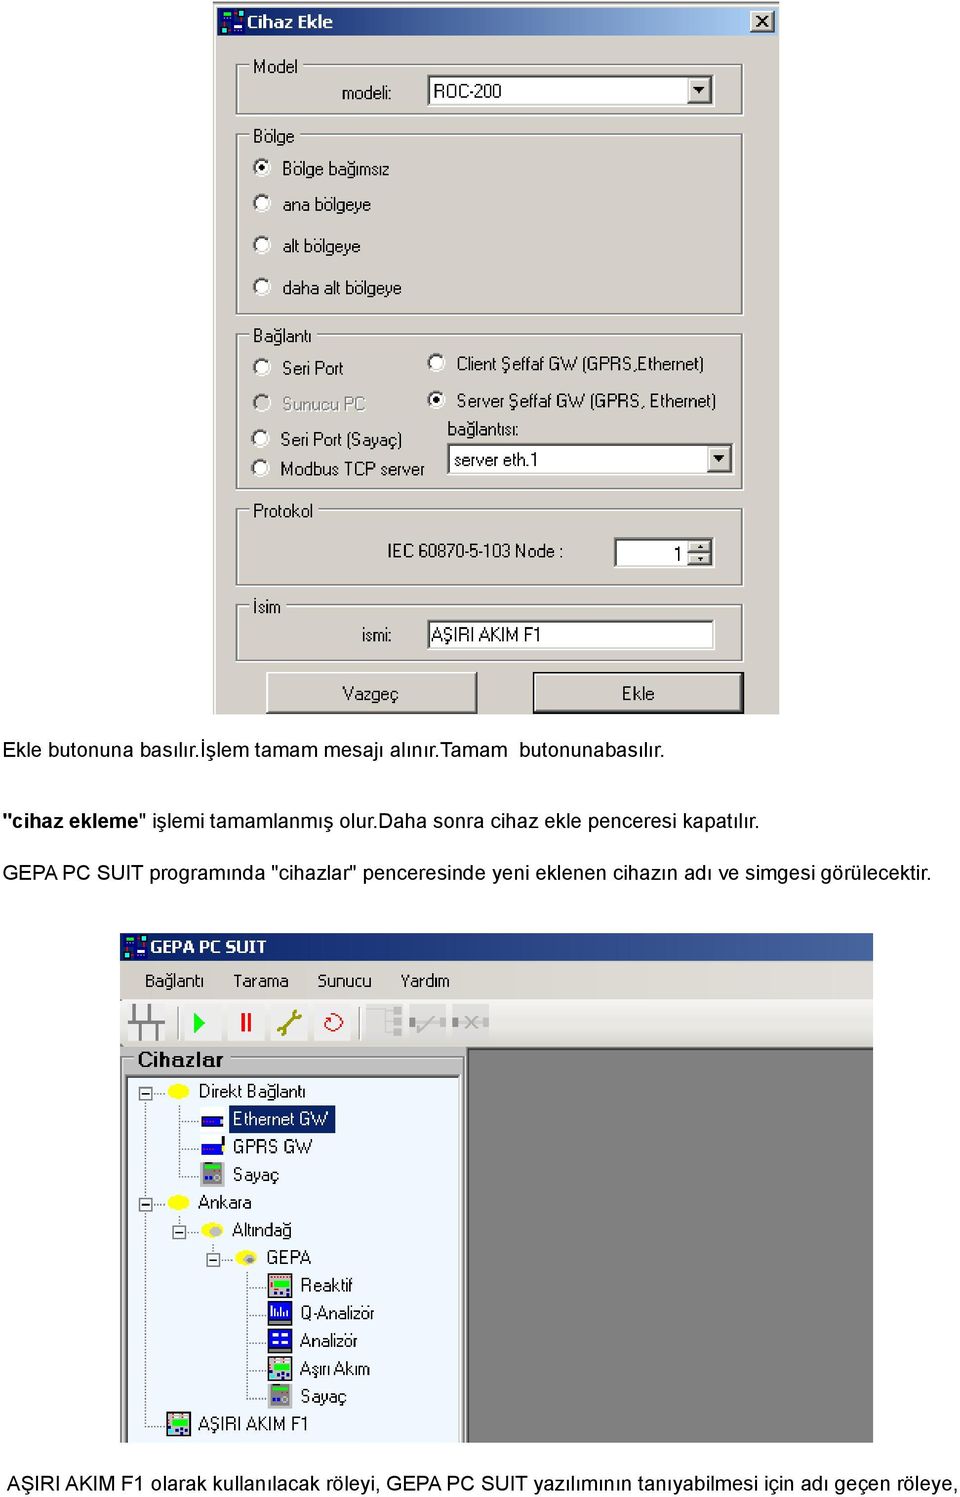 GEPA PC SUIT programında "cihazlar" penceresinde yeni eklenen cihazın adı ve simgesi